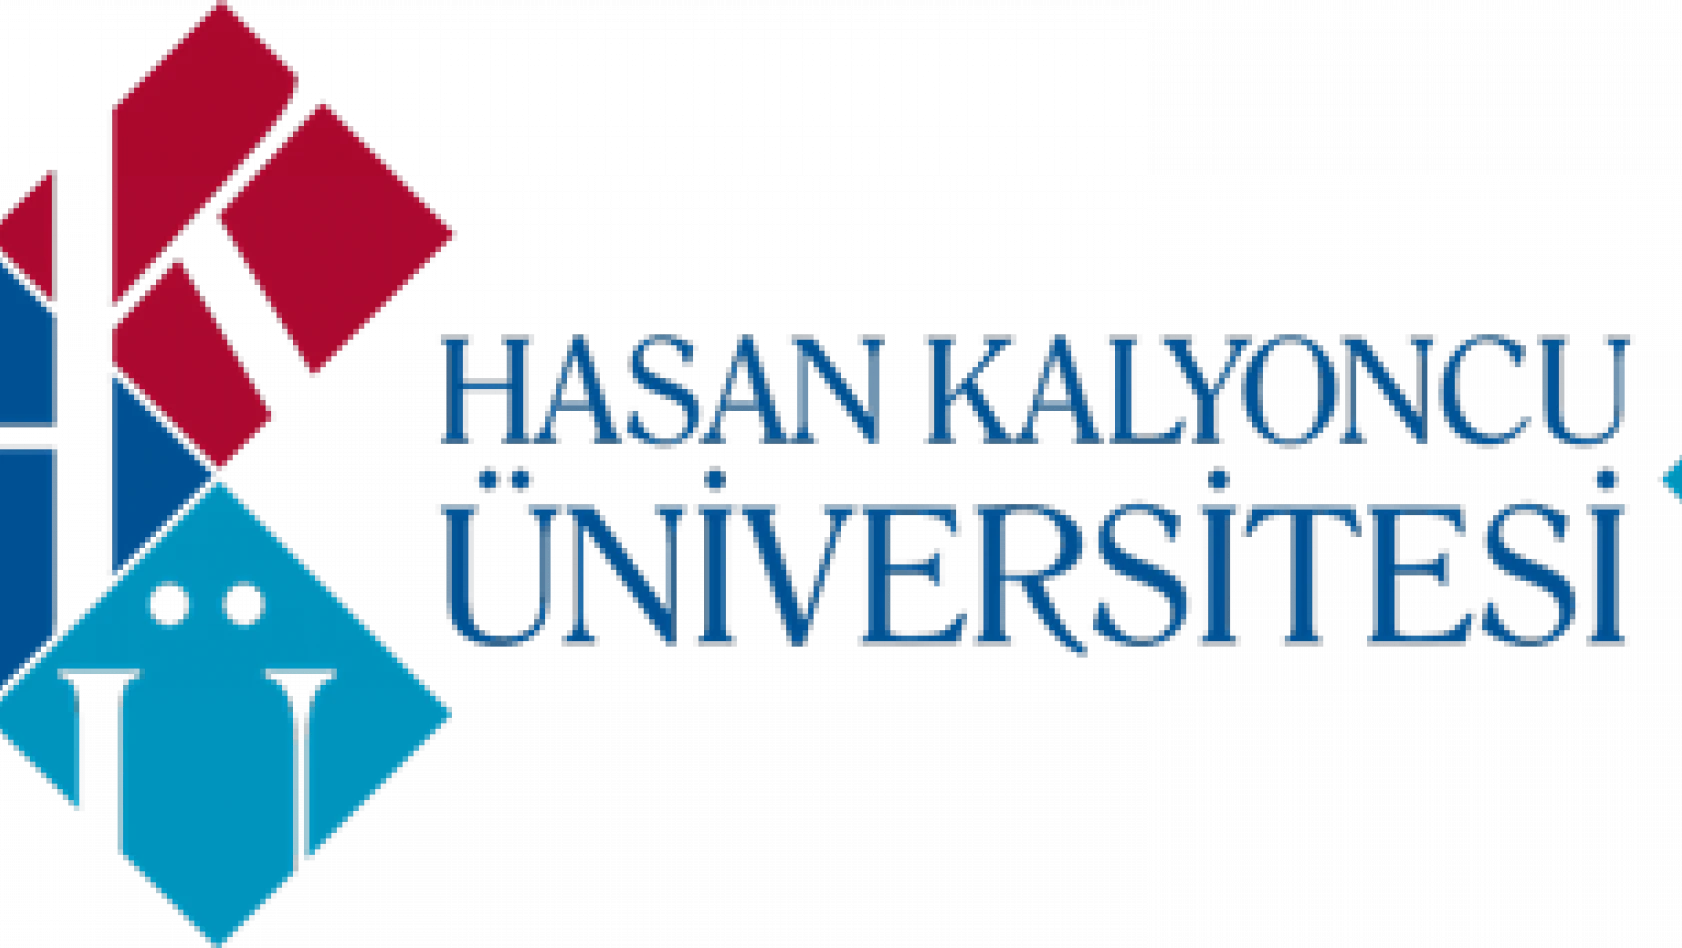 Hasan Kalyoncu Üniversitesi 13 öğretim üyesi alacak